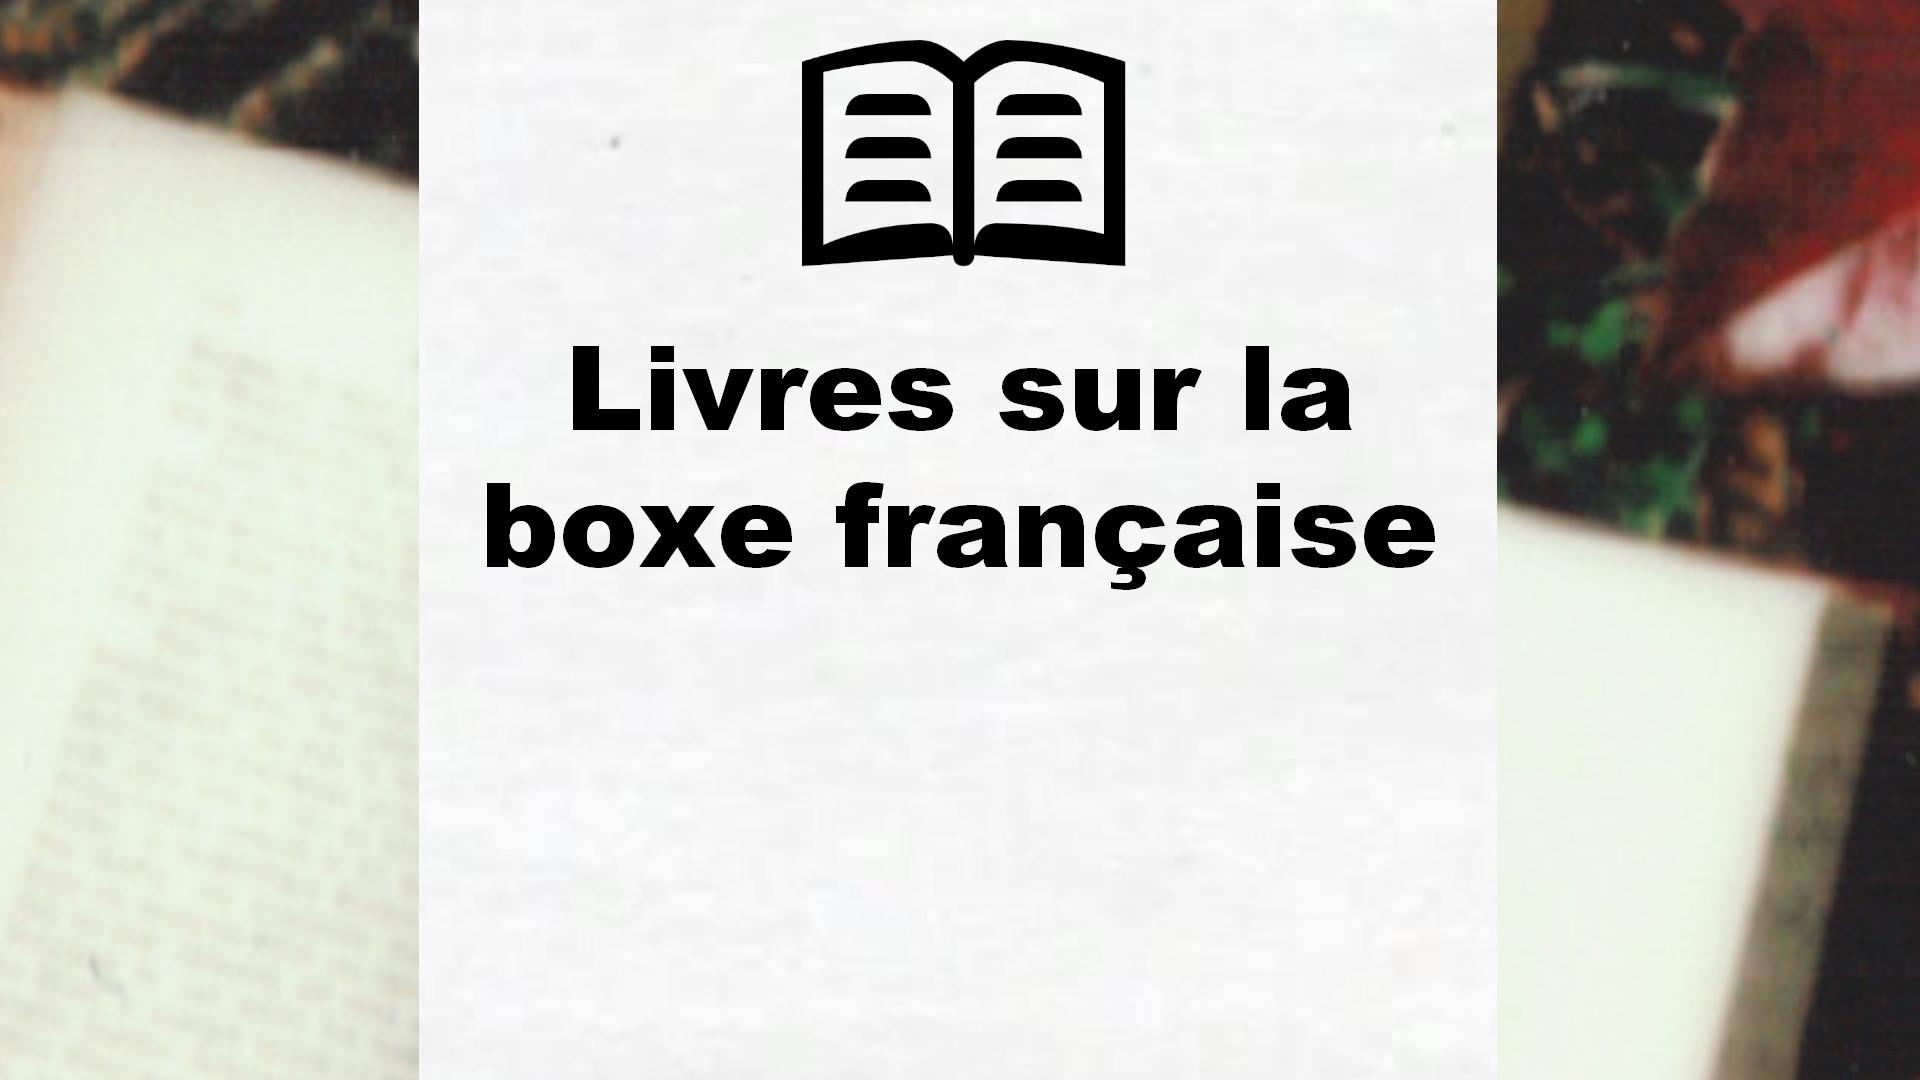 Livres sur la boxe française